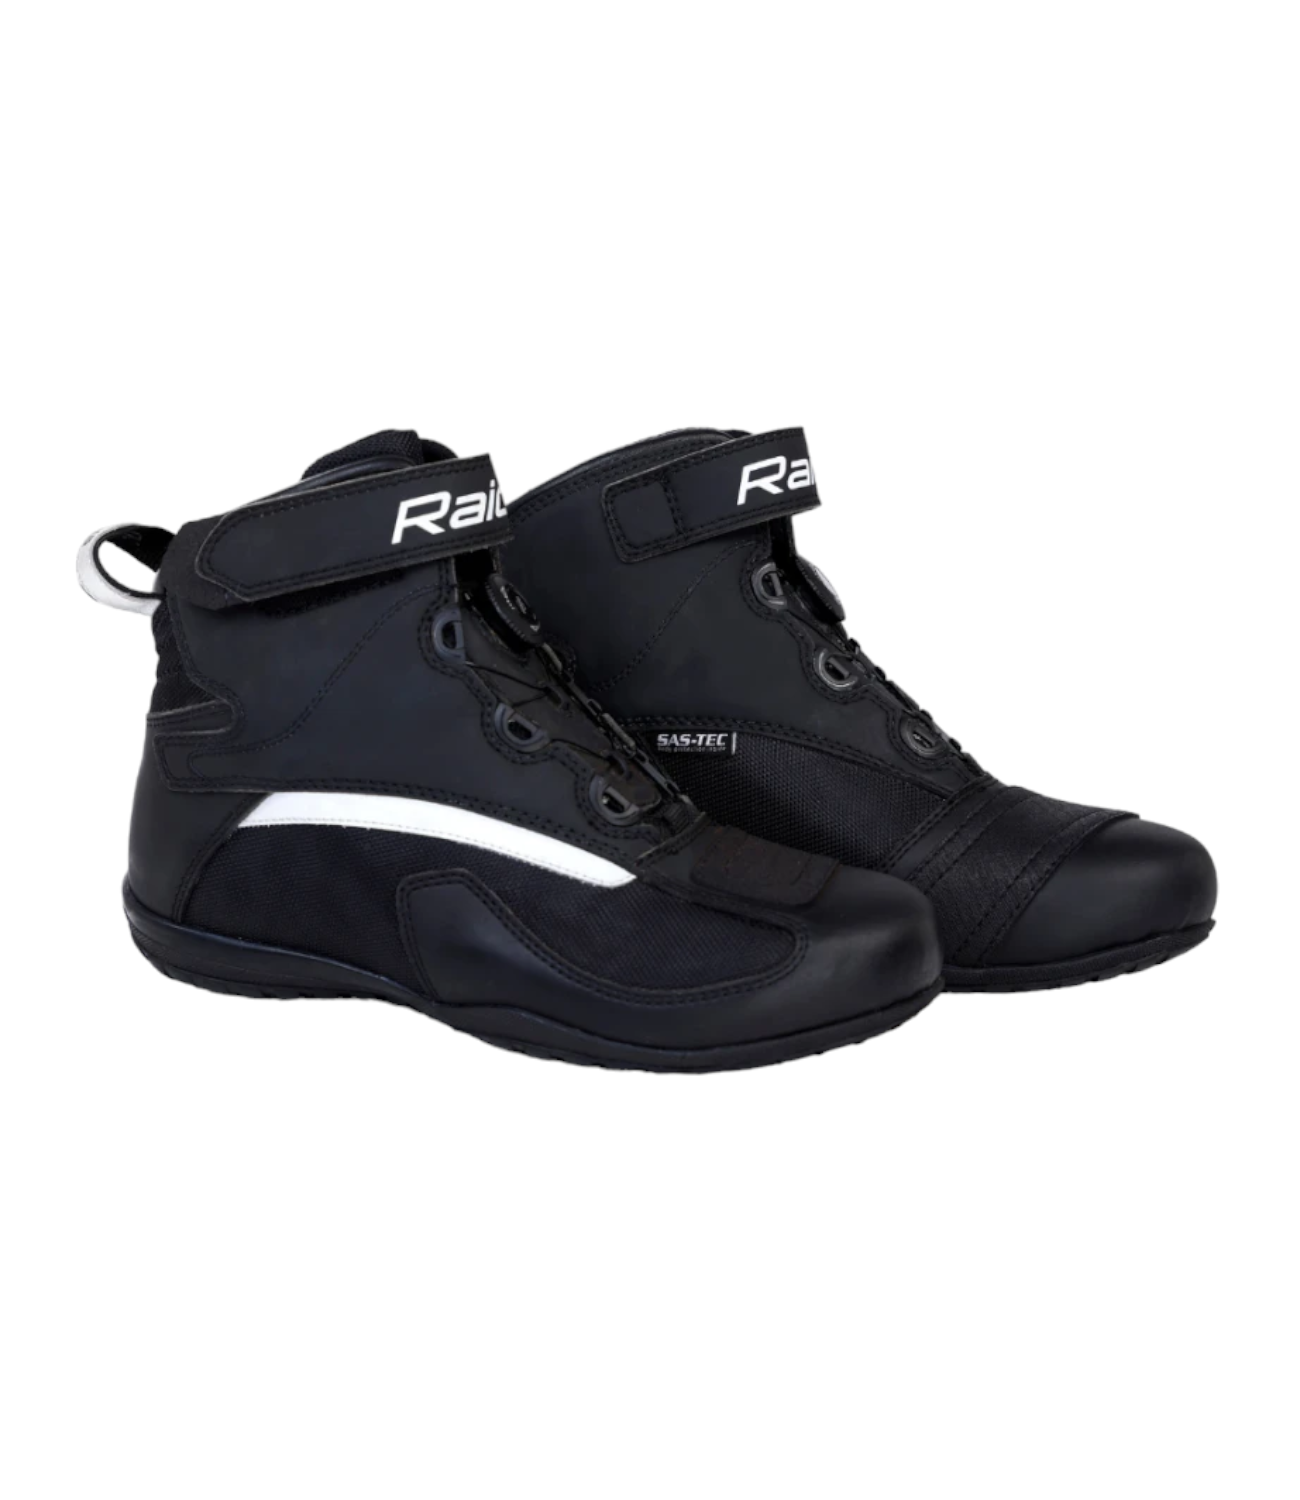 Raida UrbanR Riding Shoes - Black